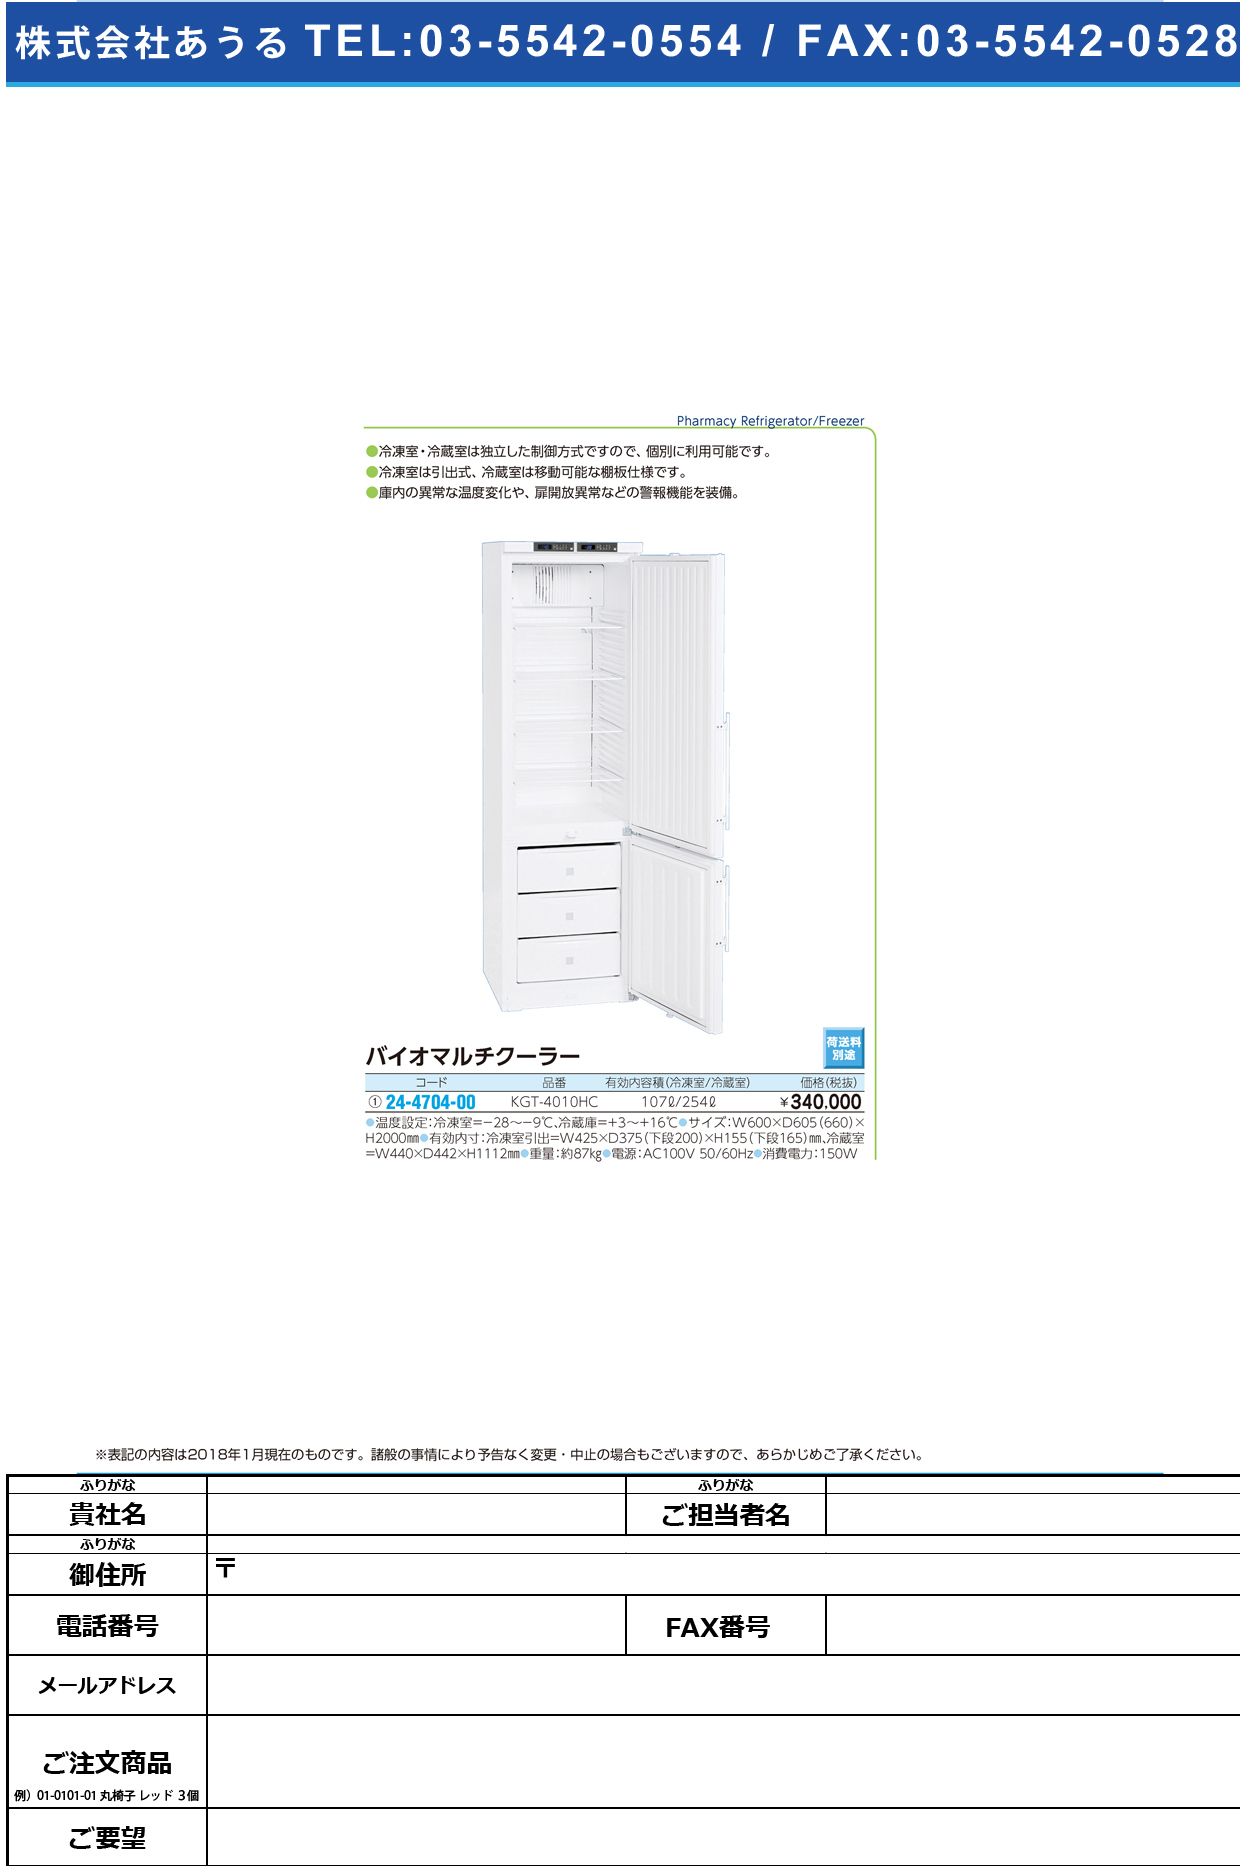 (24-4704-00)バイオマルチクーラー KGT-4010HC ﾊﾞｲｵﾏﾙﾁﾙｸｰﾗｰ(日本フリーザー)【1台単位】【2019年カタログ商品】